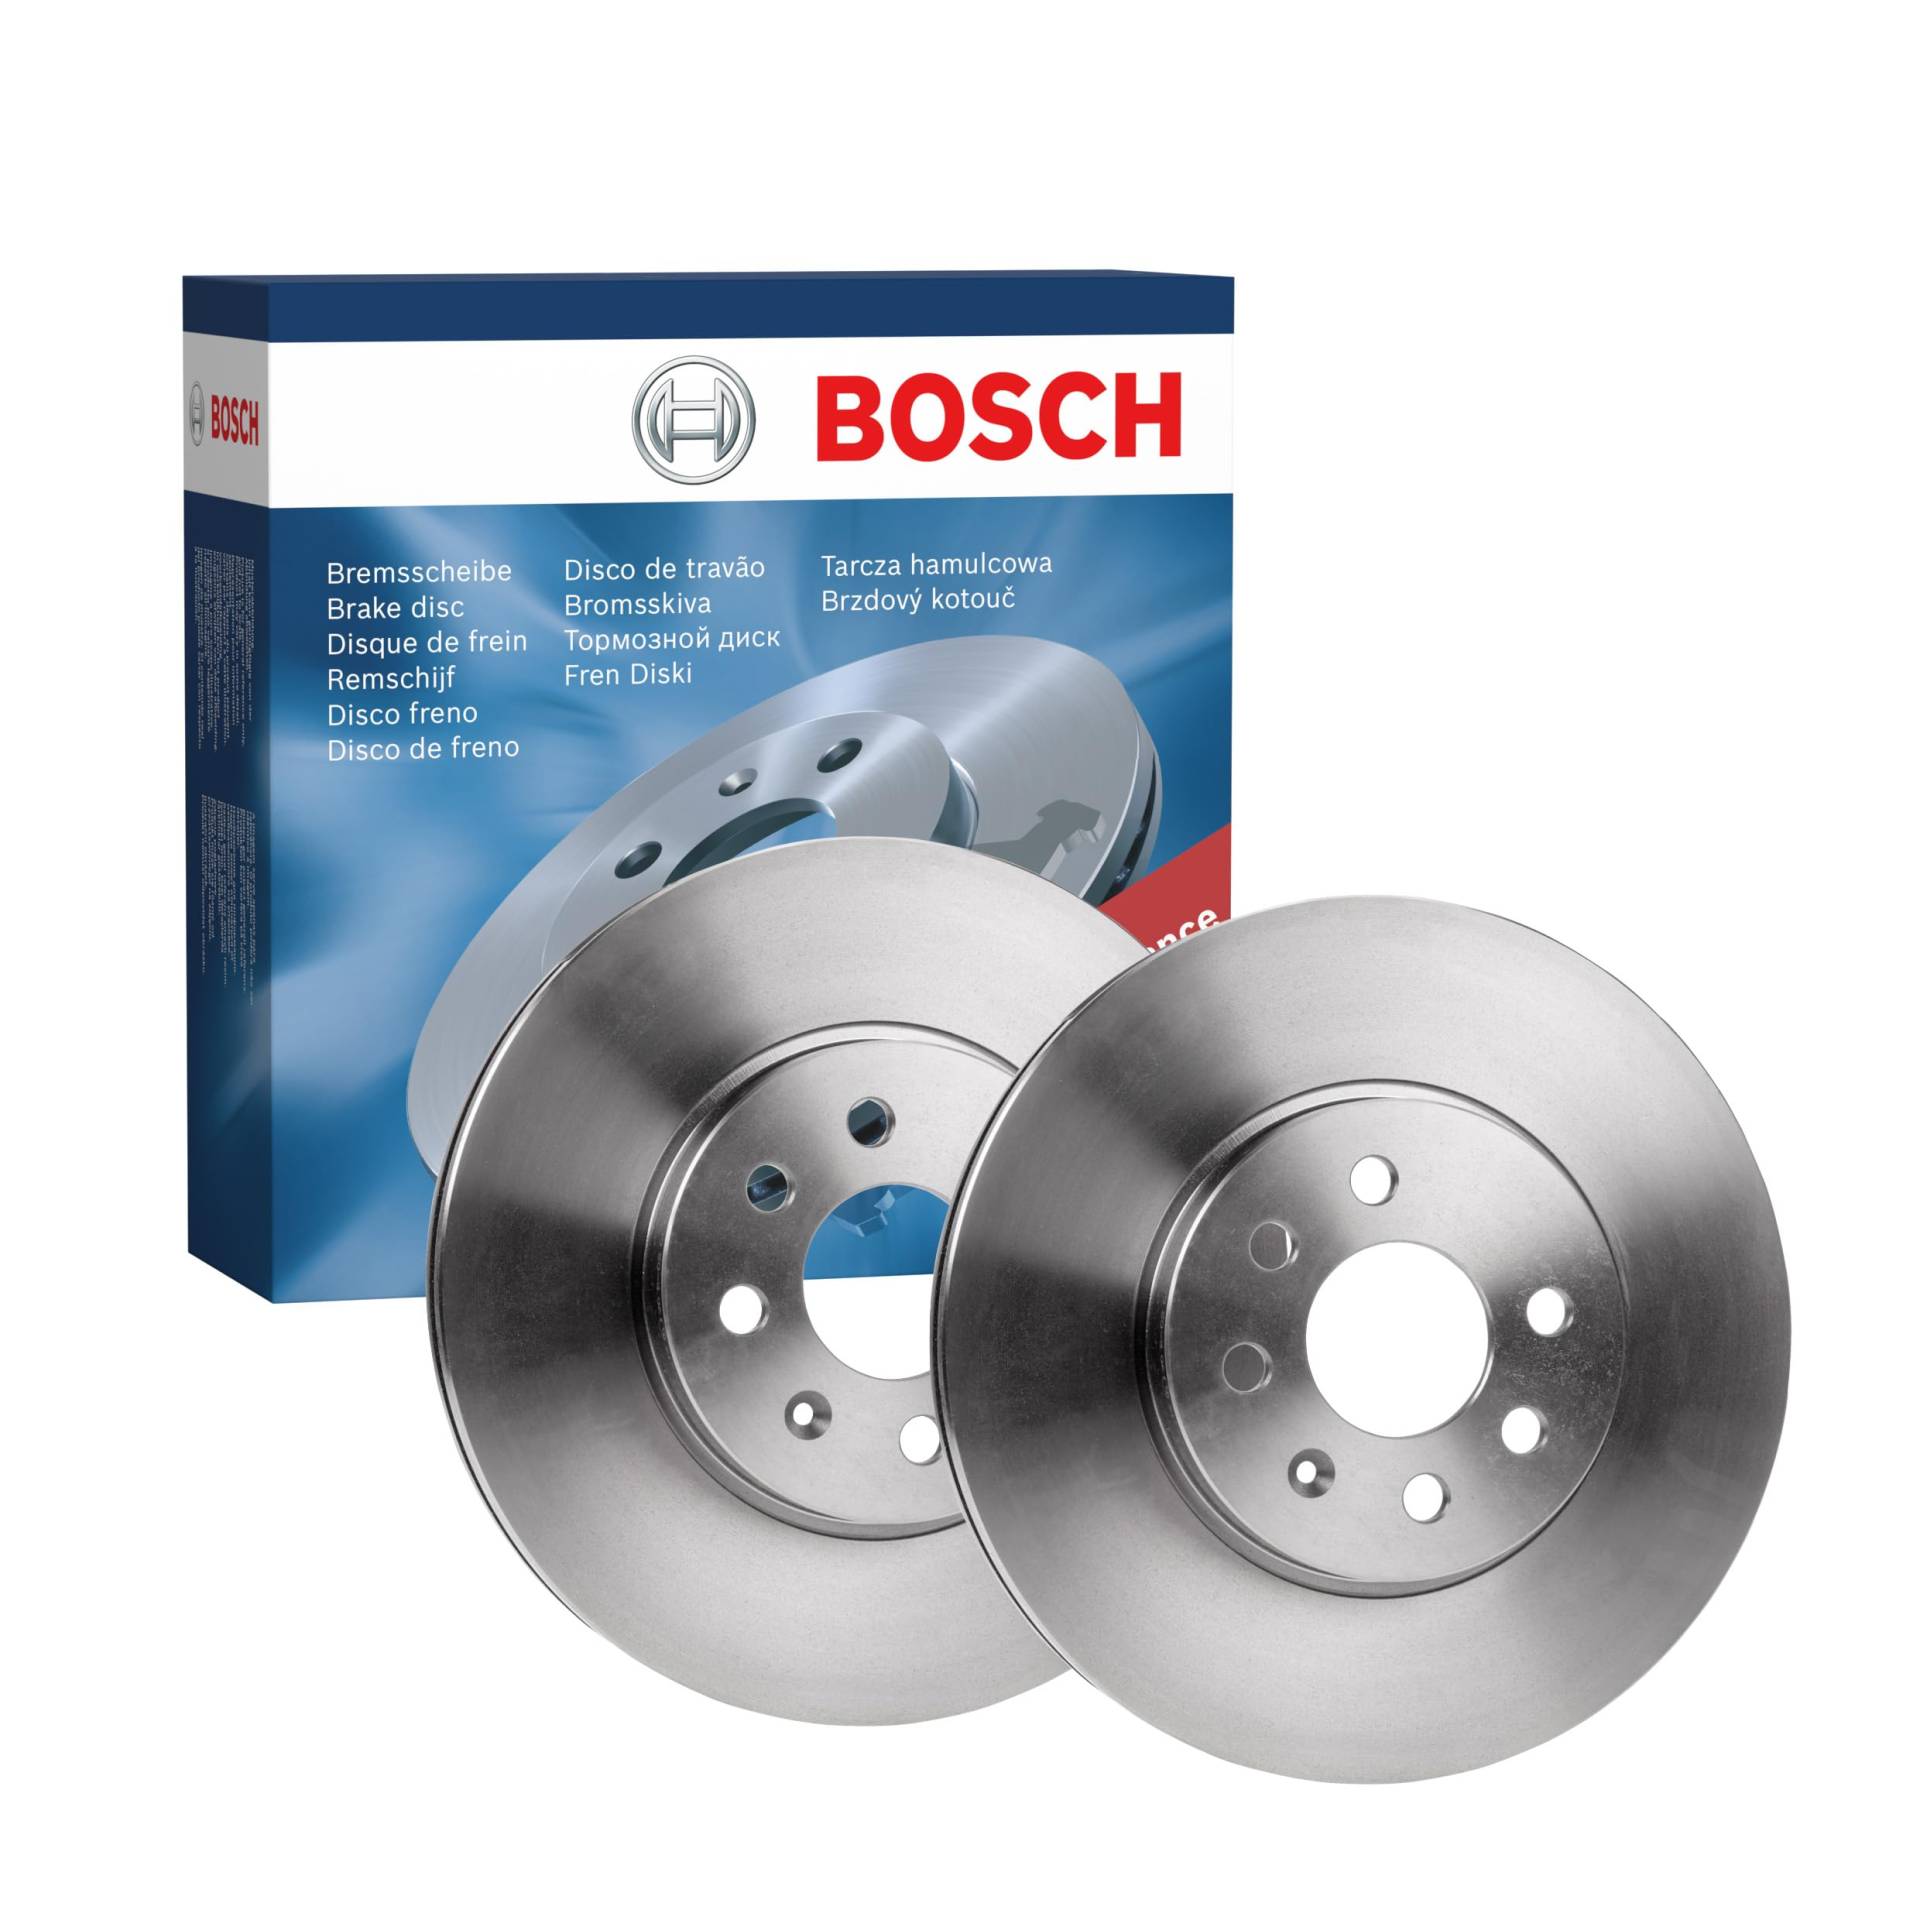 Bosch BD1939 Bremsscheiben - Vorderachse - ECE-R90 Zertifizierung - zwei Bremsscheiben pro Set von Bosch Automotive